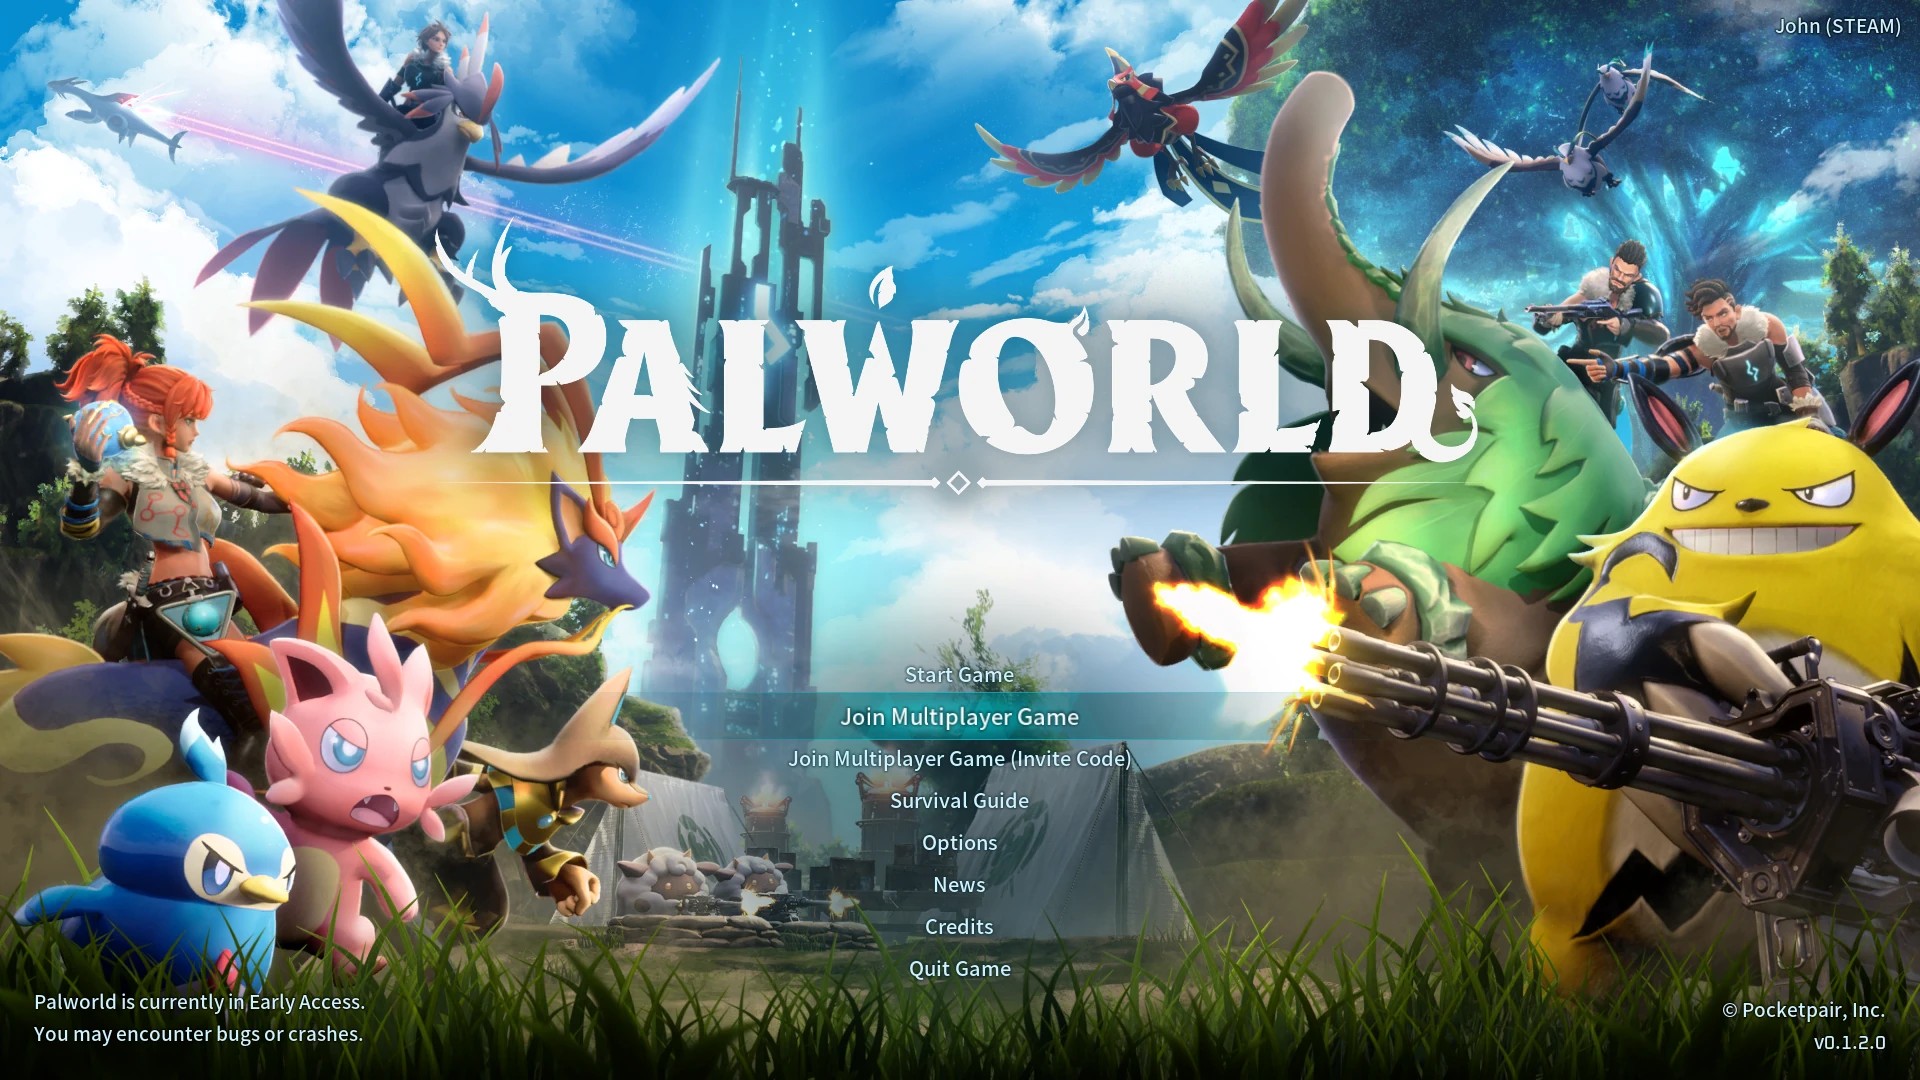 The Palworld main menu